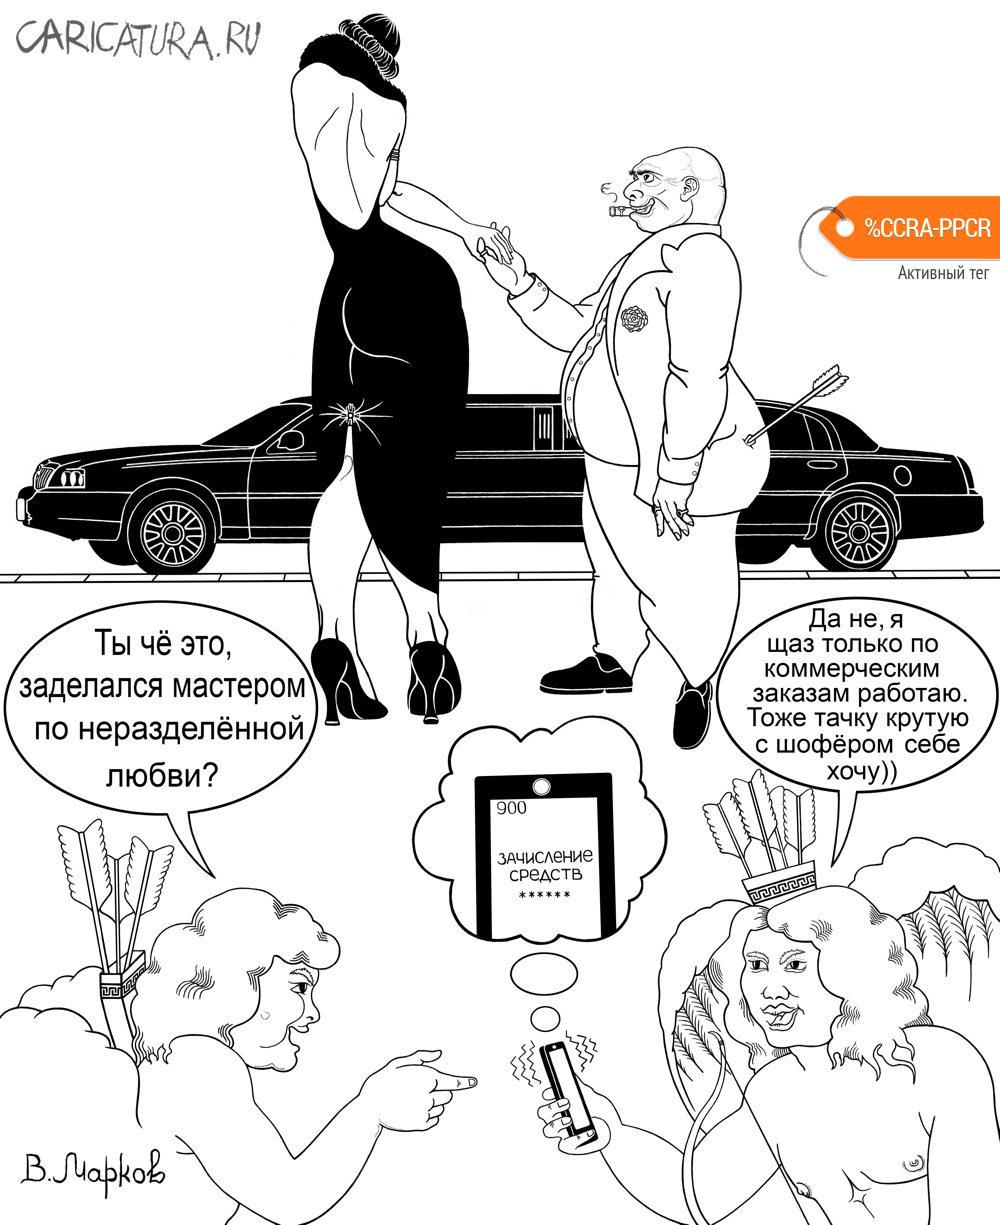 Карикатура "Амурный бизнес", Вячеслав Марков